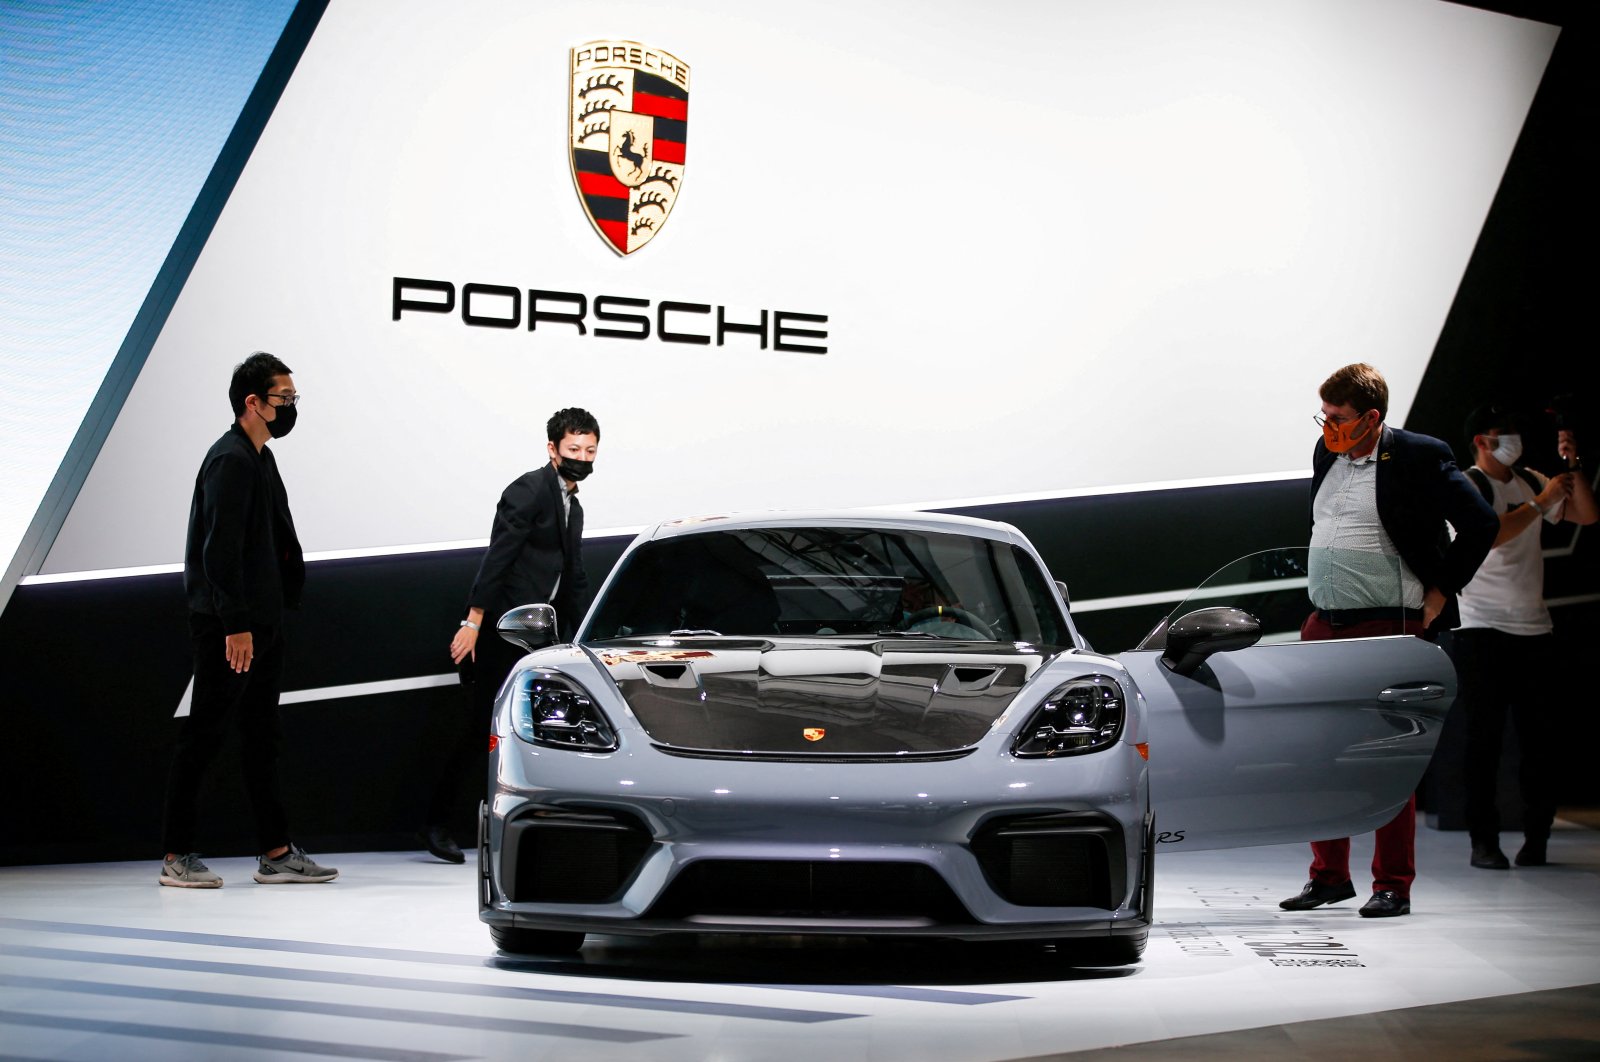 Volkswagen memicu rencana IPO Porsche yang penting, menentang keraguan pasar